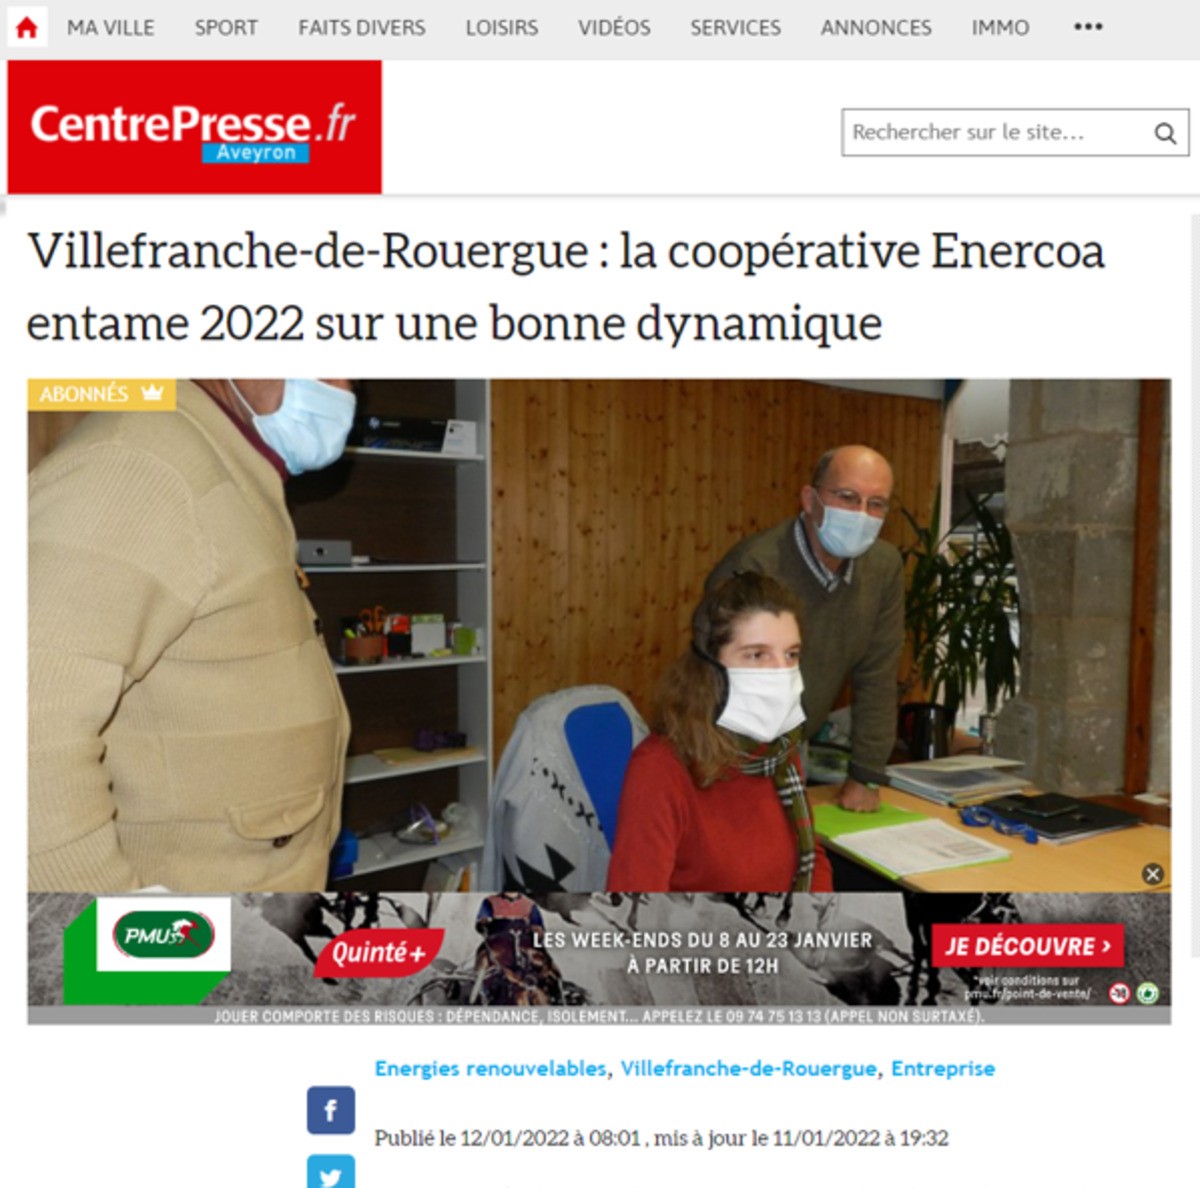 Villefranche-de-Rouergue : la coopérative Enercoa entame 2022 sur une bonne dynamique